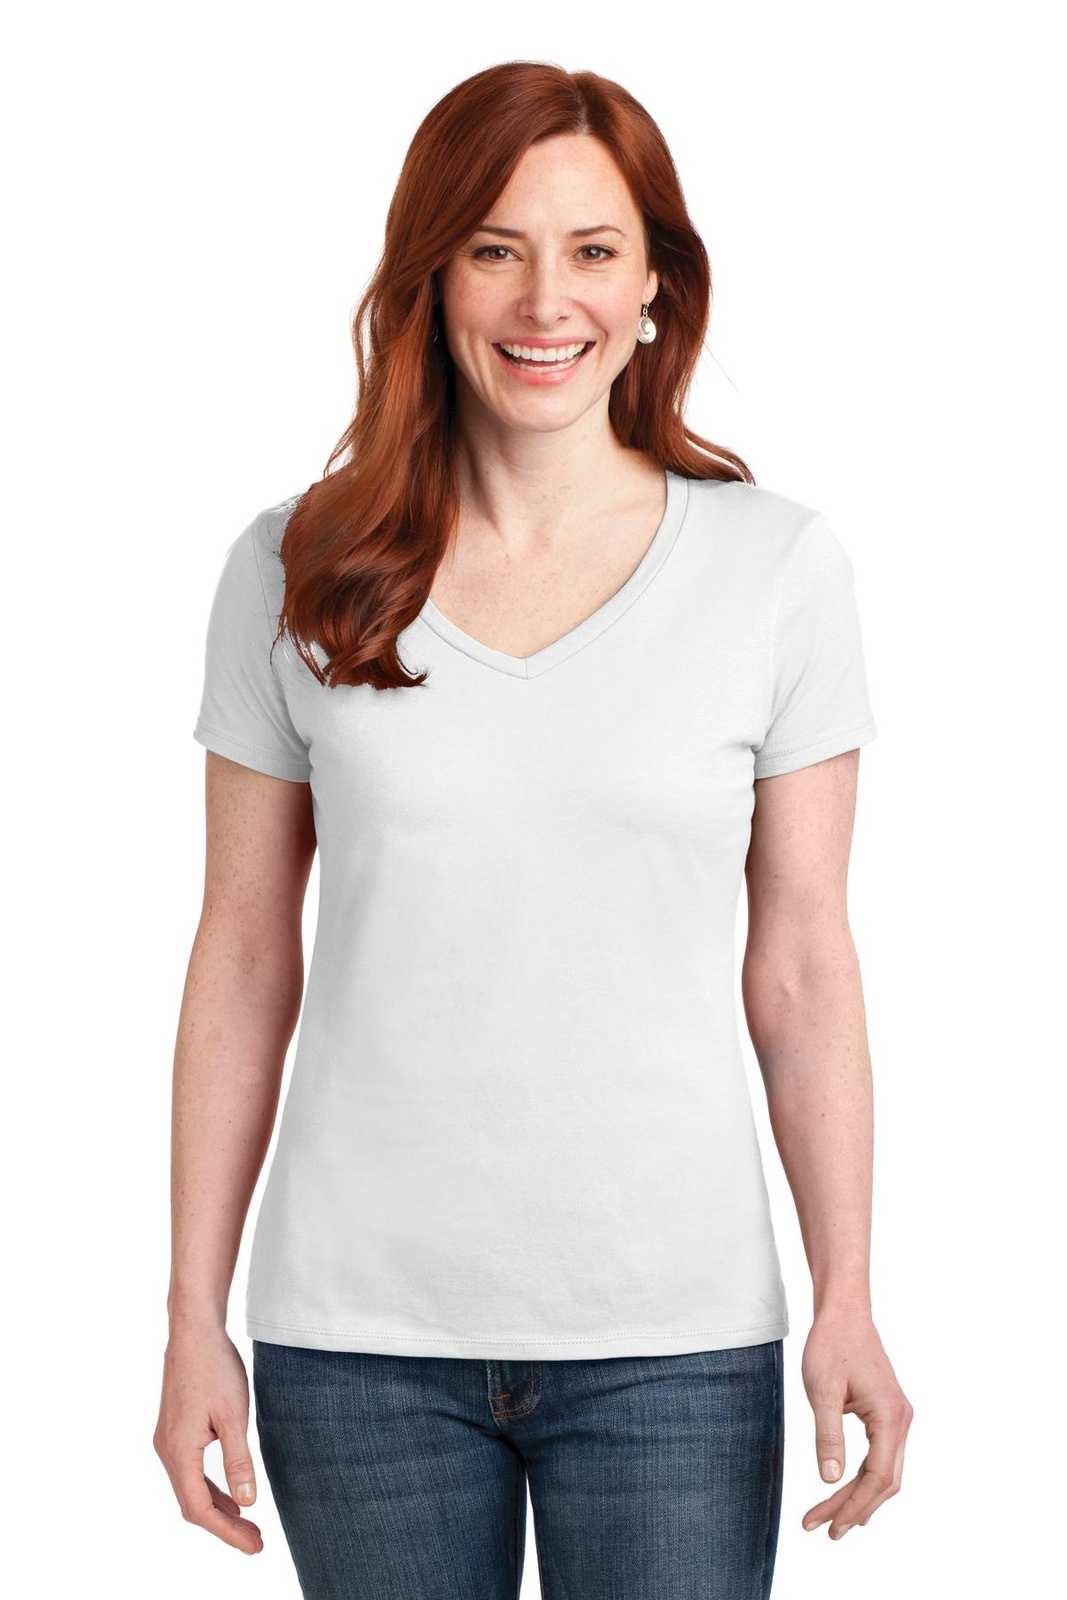 Hanes S04V Ladies Nano-T Cotton V-Neck T-Shirt - White - HIT a Double